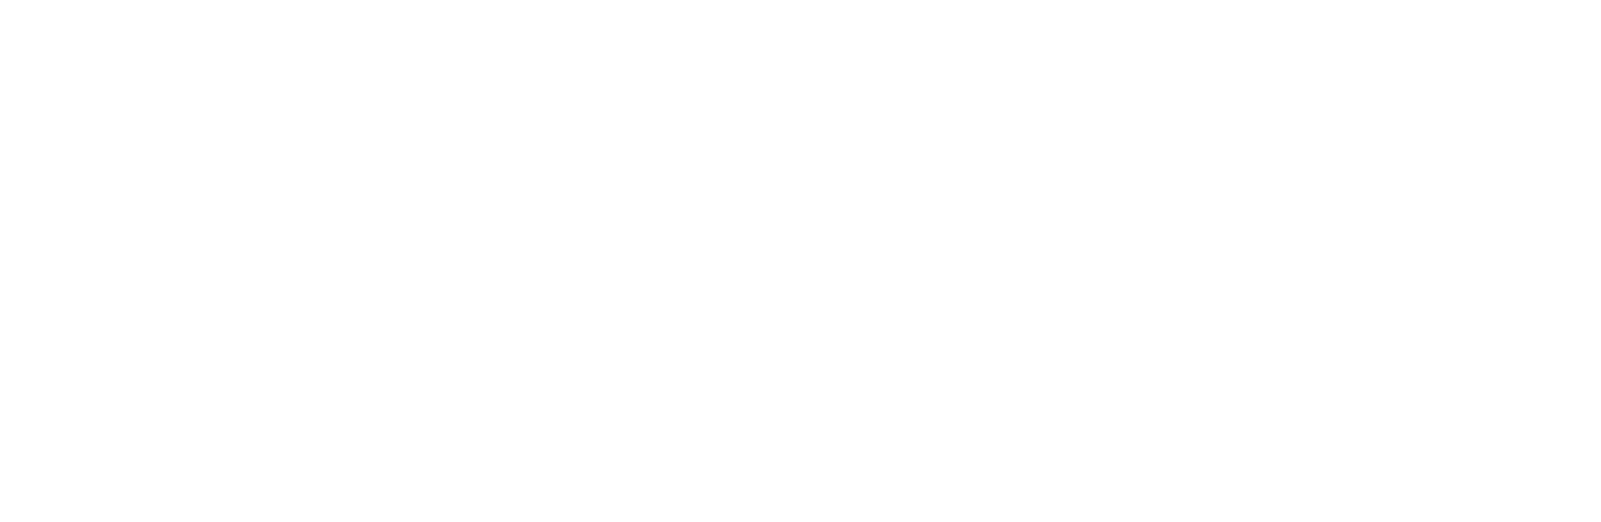 Corebridge Financial logo large for dark backgrounds (transparent PNG)